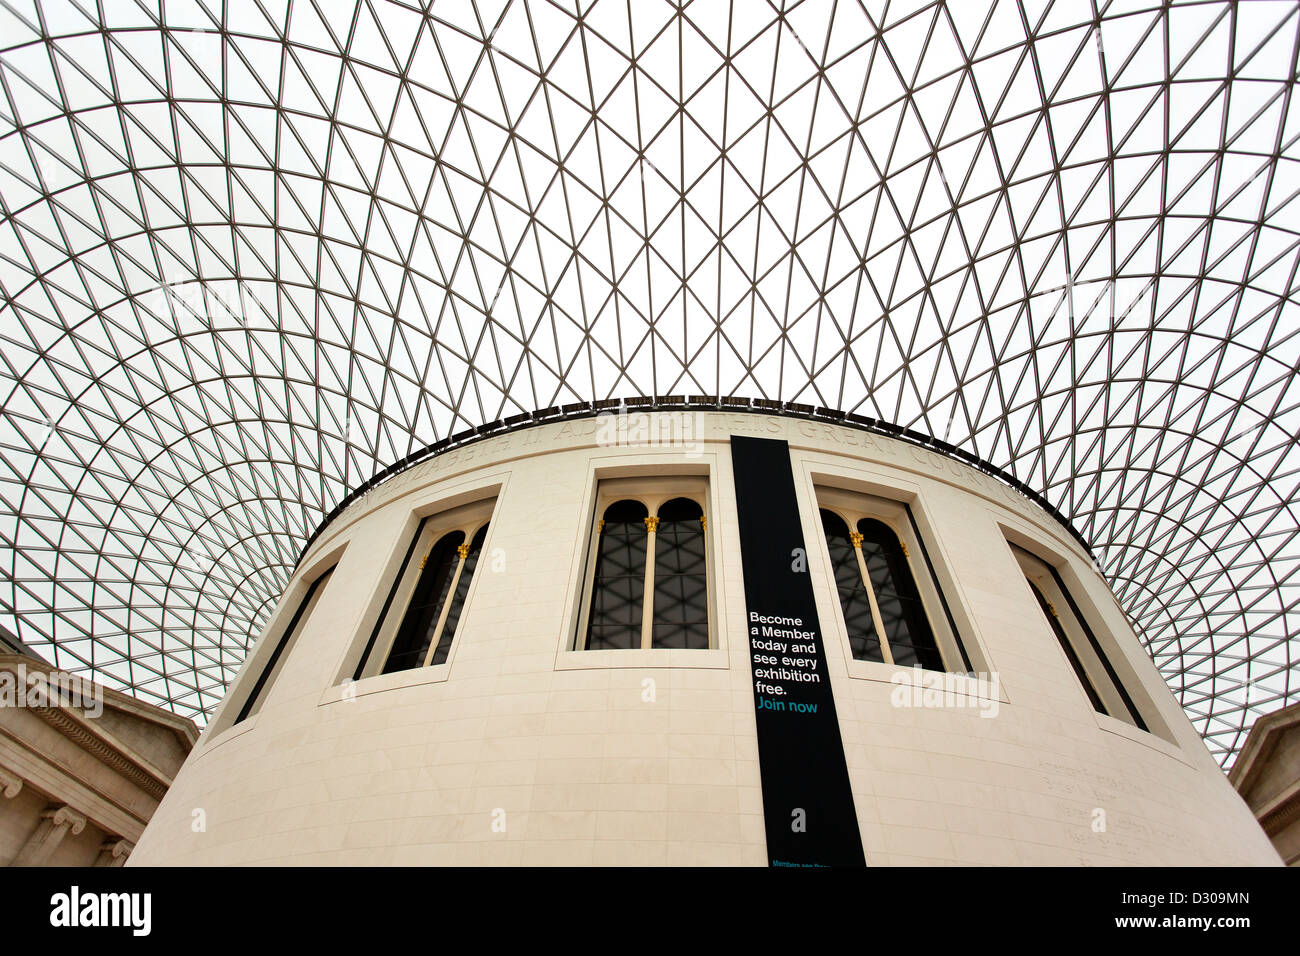 Der Queen Elizabeth II Great Court des British Museum. Der Lesesaal Zimmer und Eingang. Stockfoto